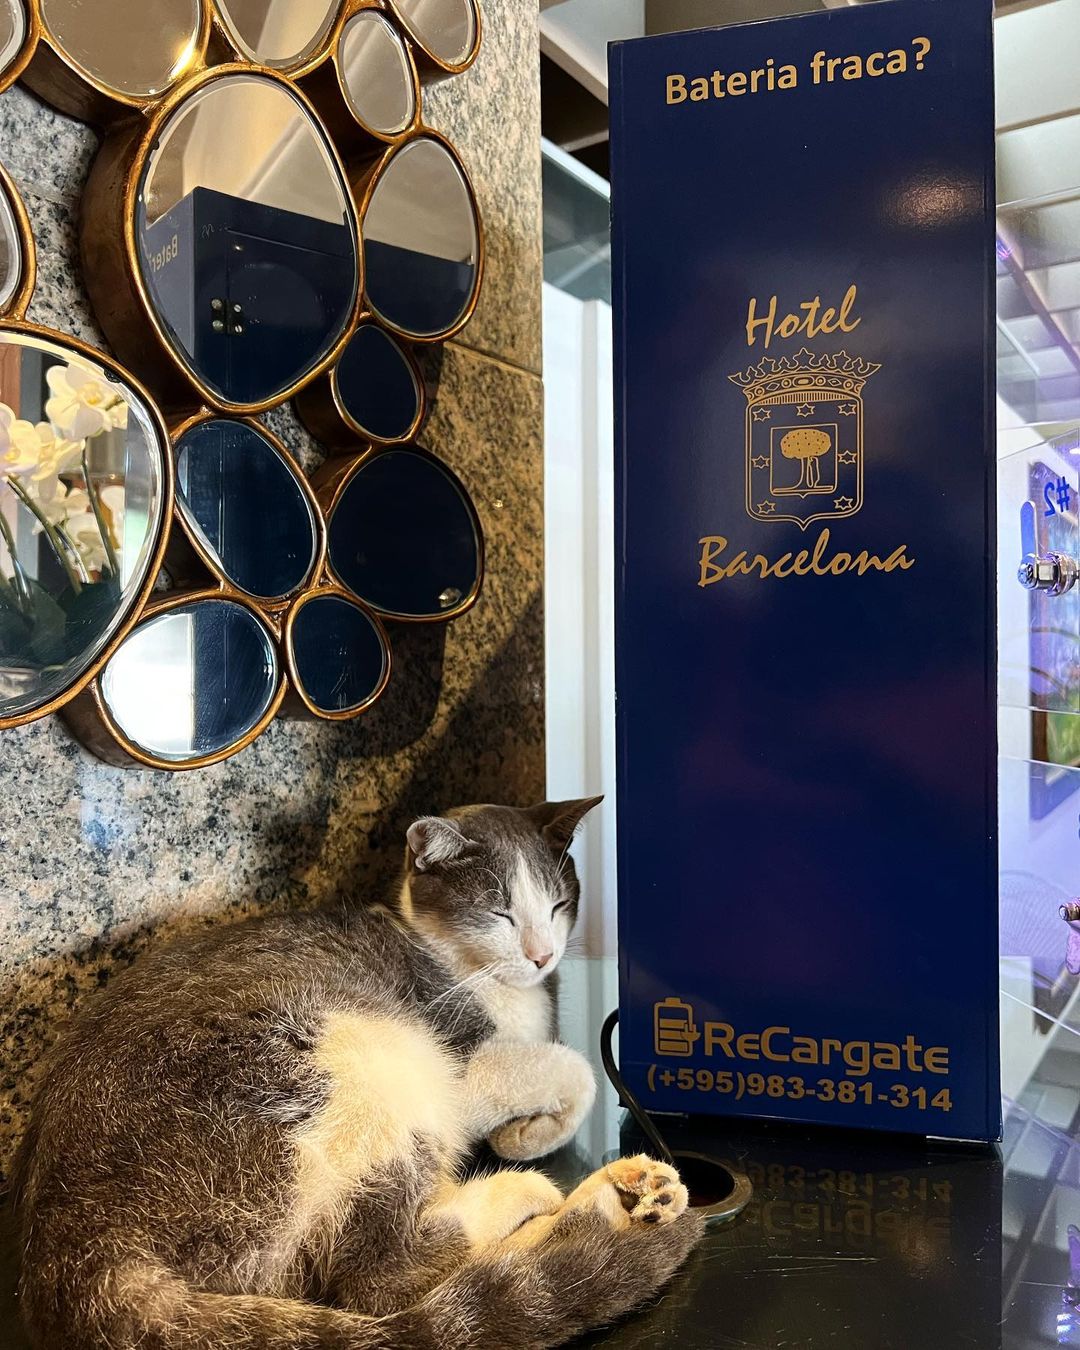 Hotel "contrata" gato e felino vira atração principal de estabelecimento